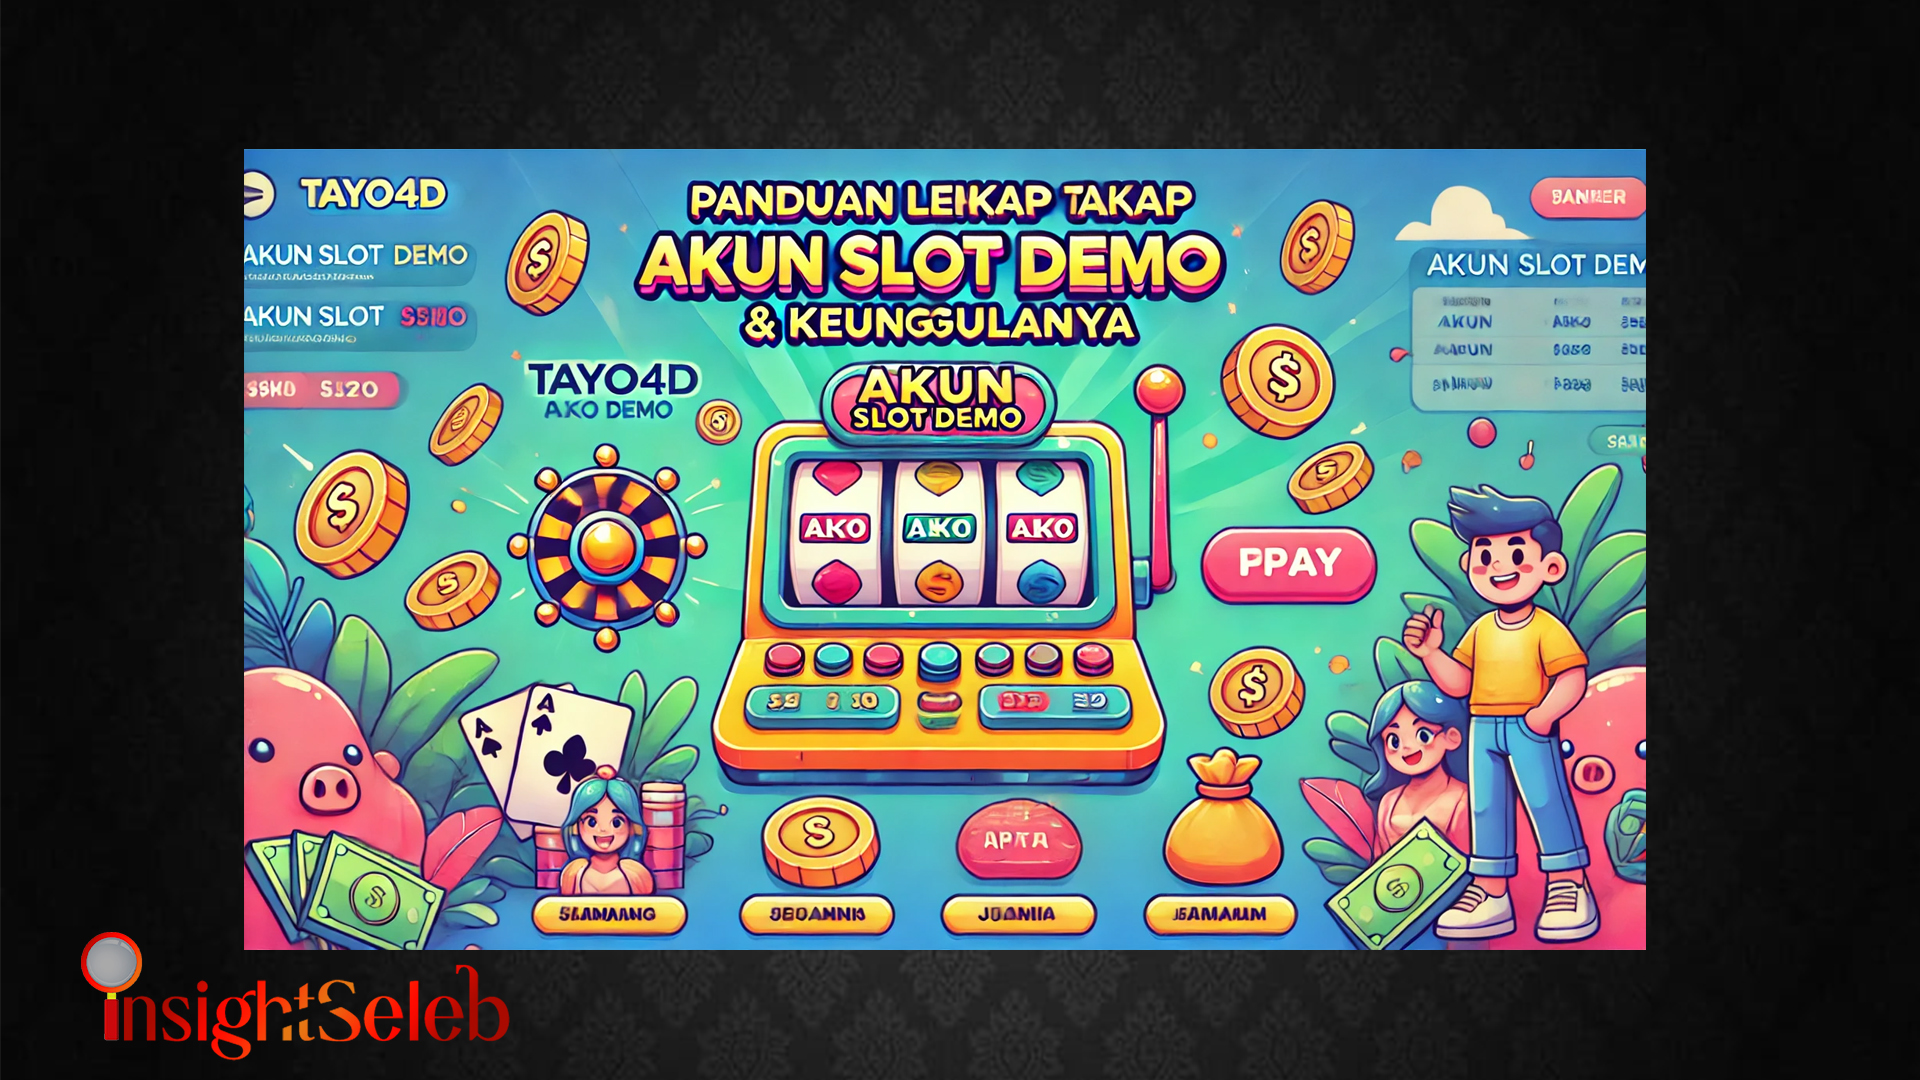 Panduan Lengkap Tayo4D Akun Slot Demo & Keunggulannya